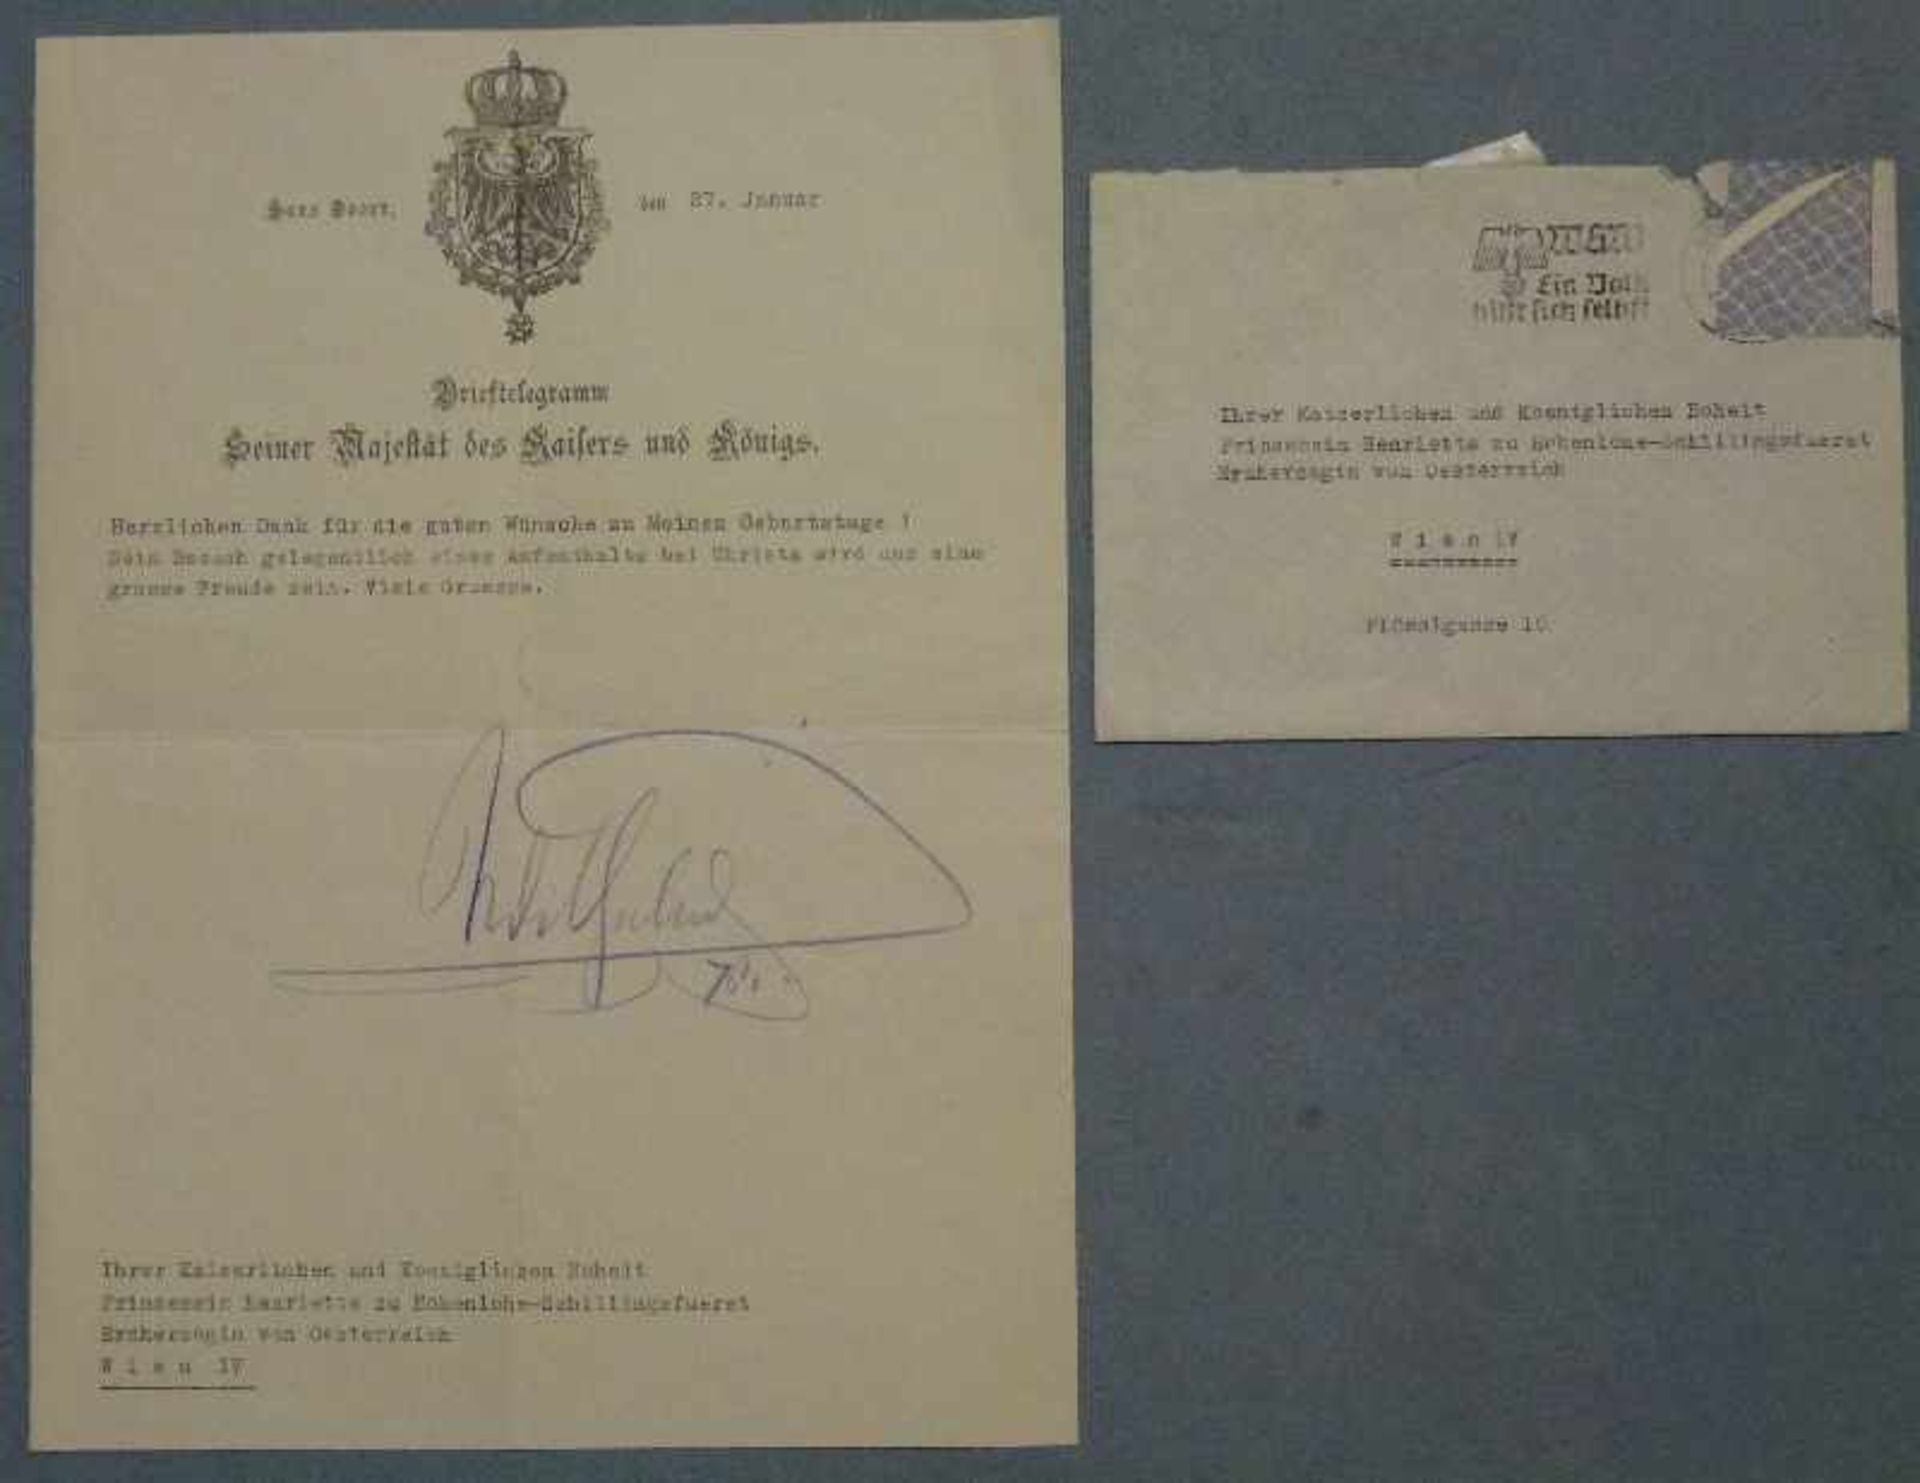 Brieftelegramm Kaiser Wilhelm II. Briefbogen aus Haus Doorn m. eigenhändiger Unterschrift Kaiser